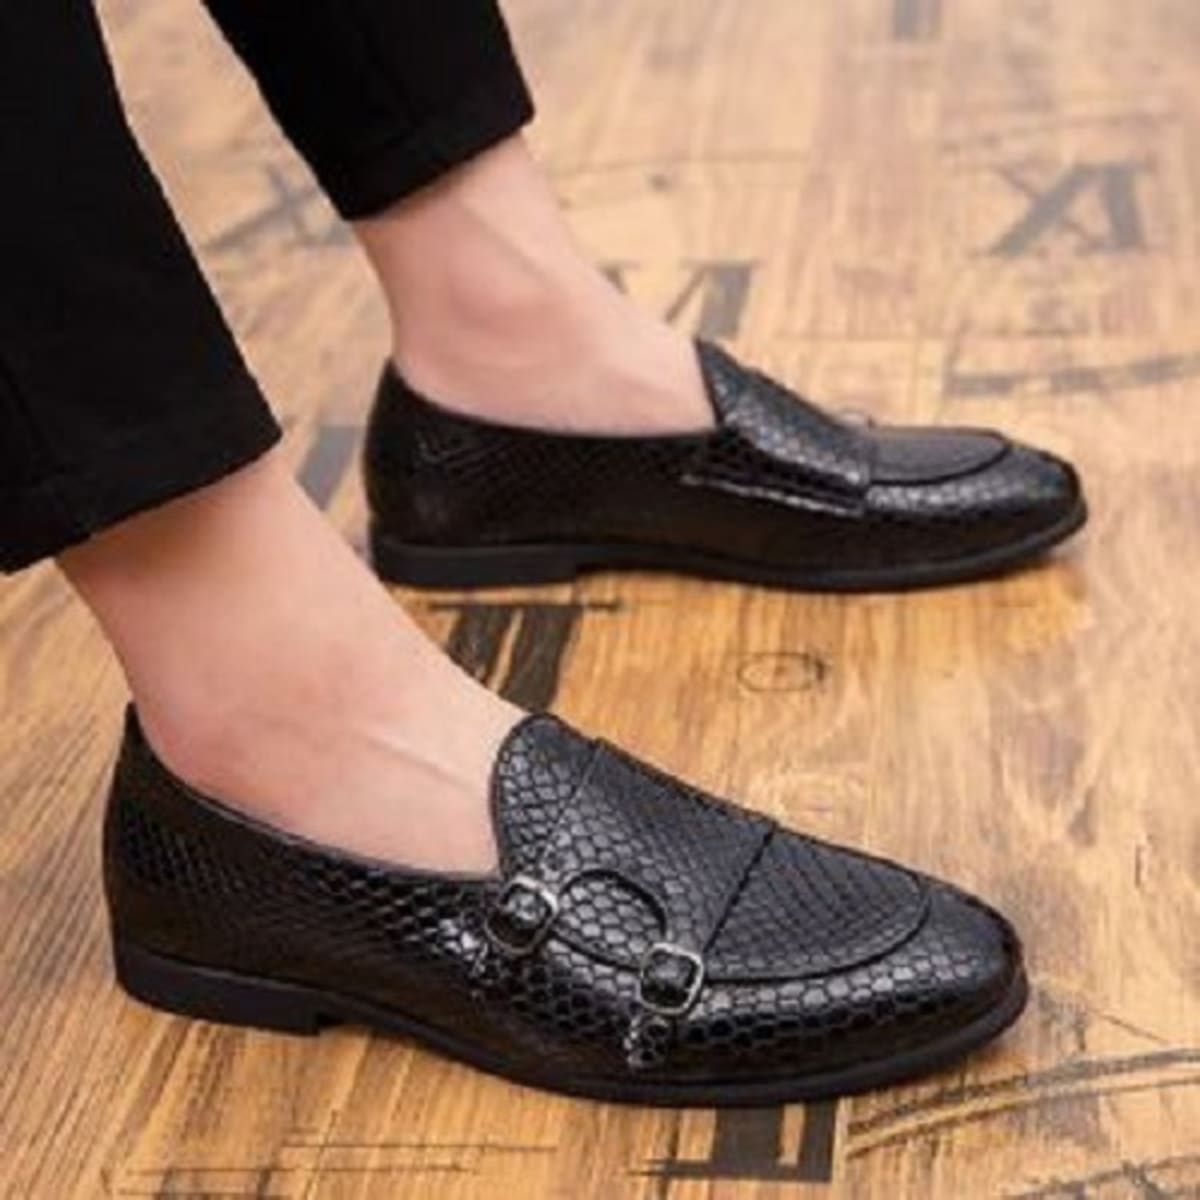 knightsbridge | Shoes | New Knightsbridge Gothic Style Steel Toe Boots Size  6 Style 4 Glossy Leather | Poshmark